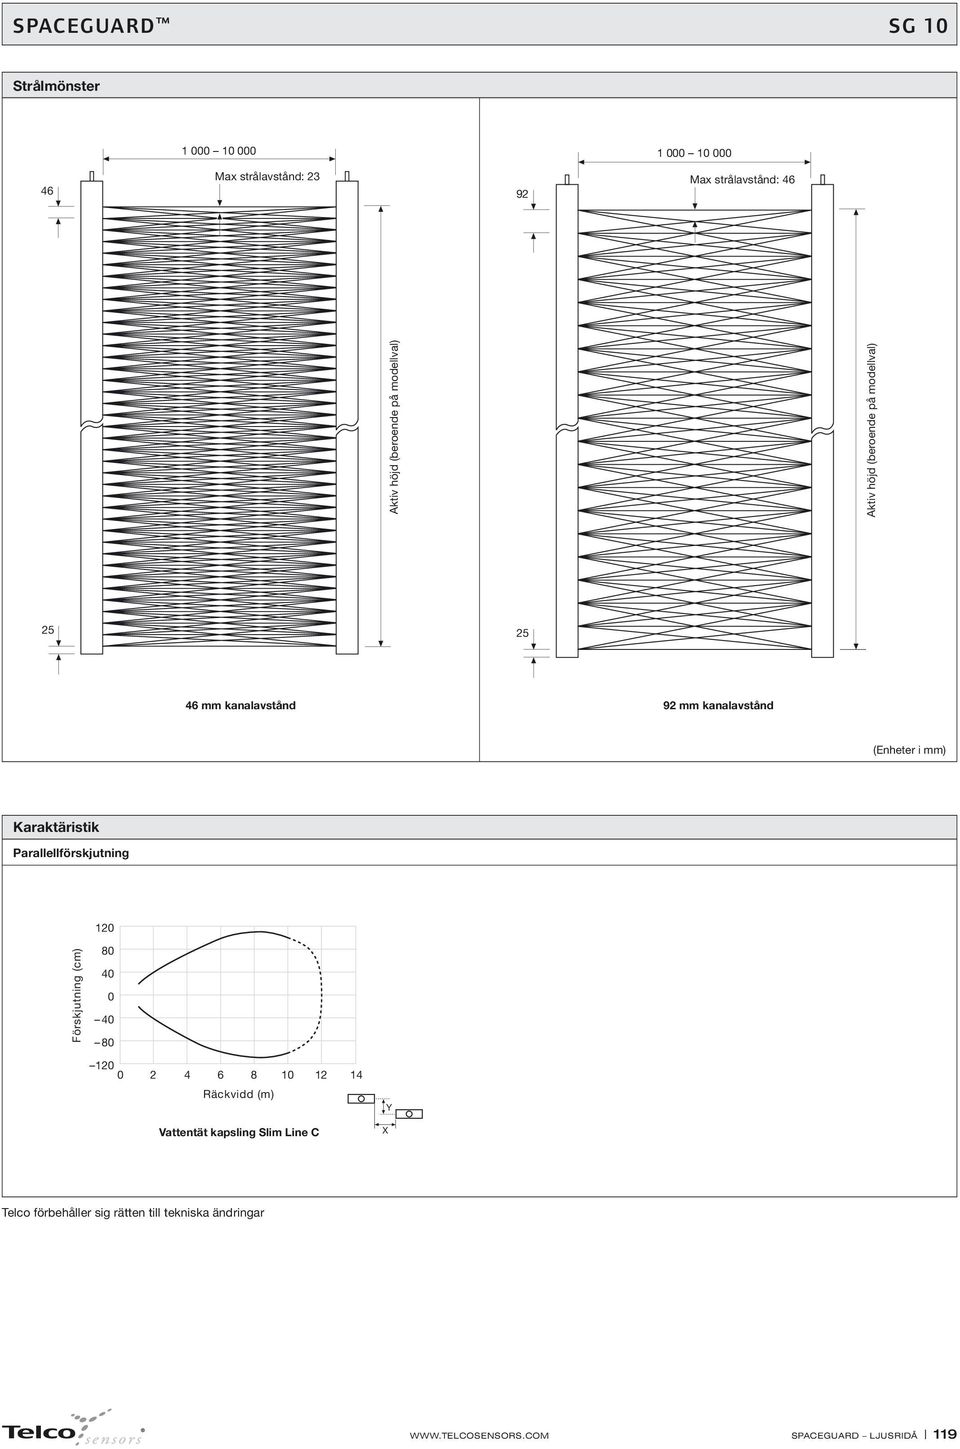 kanalavstånd (Enheter i mm) Karaktäristik Parallellförskjutning 0 Förskjutning (cm) 80 0 0 0 80